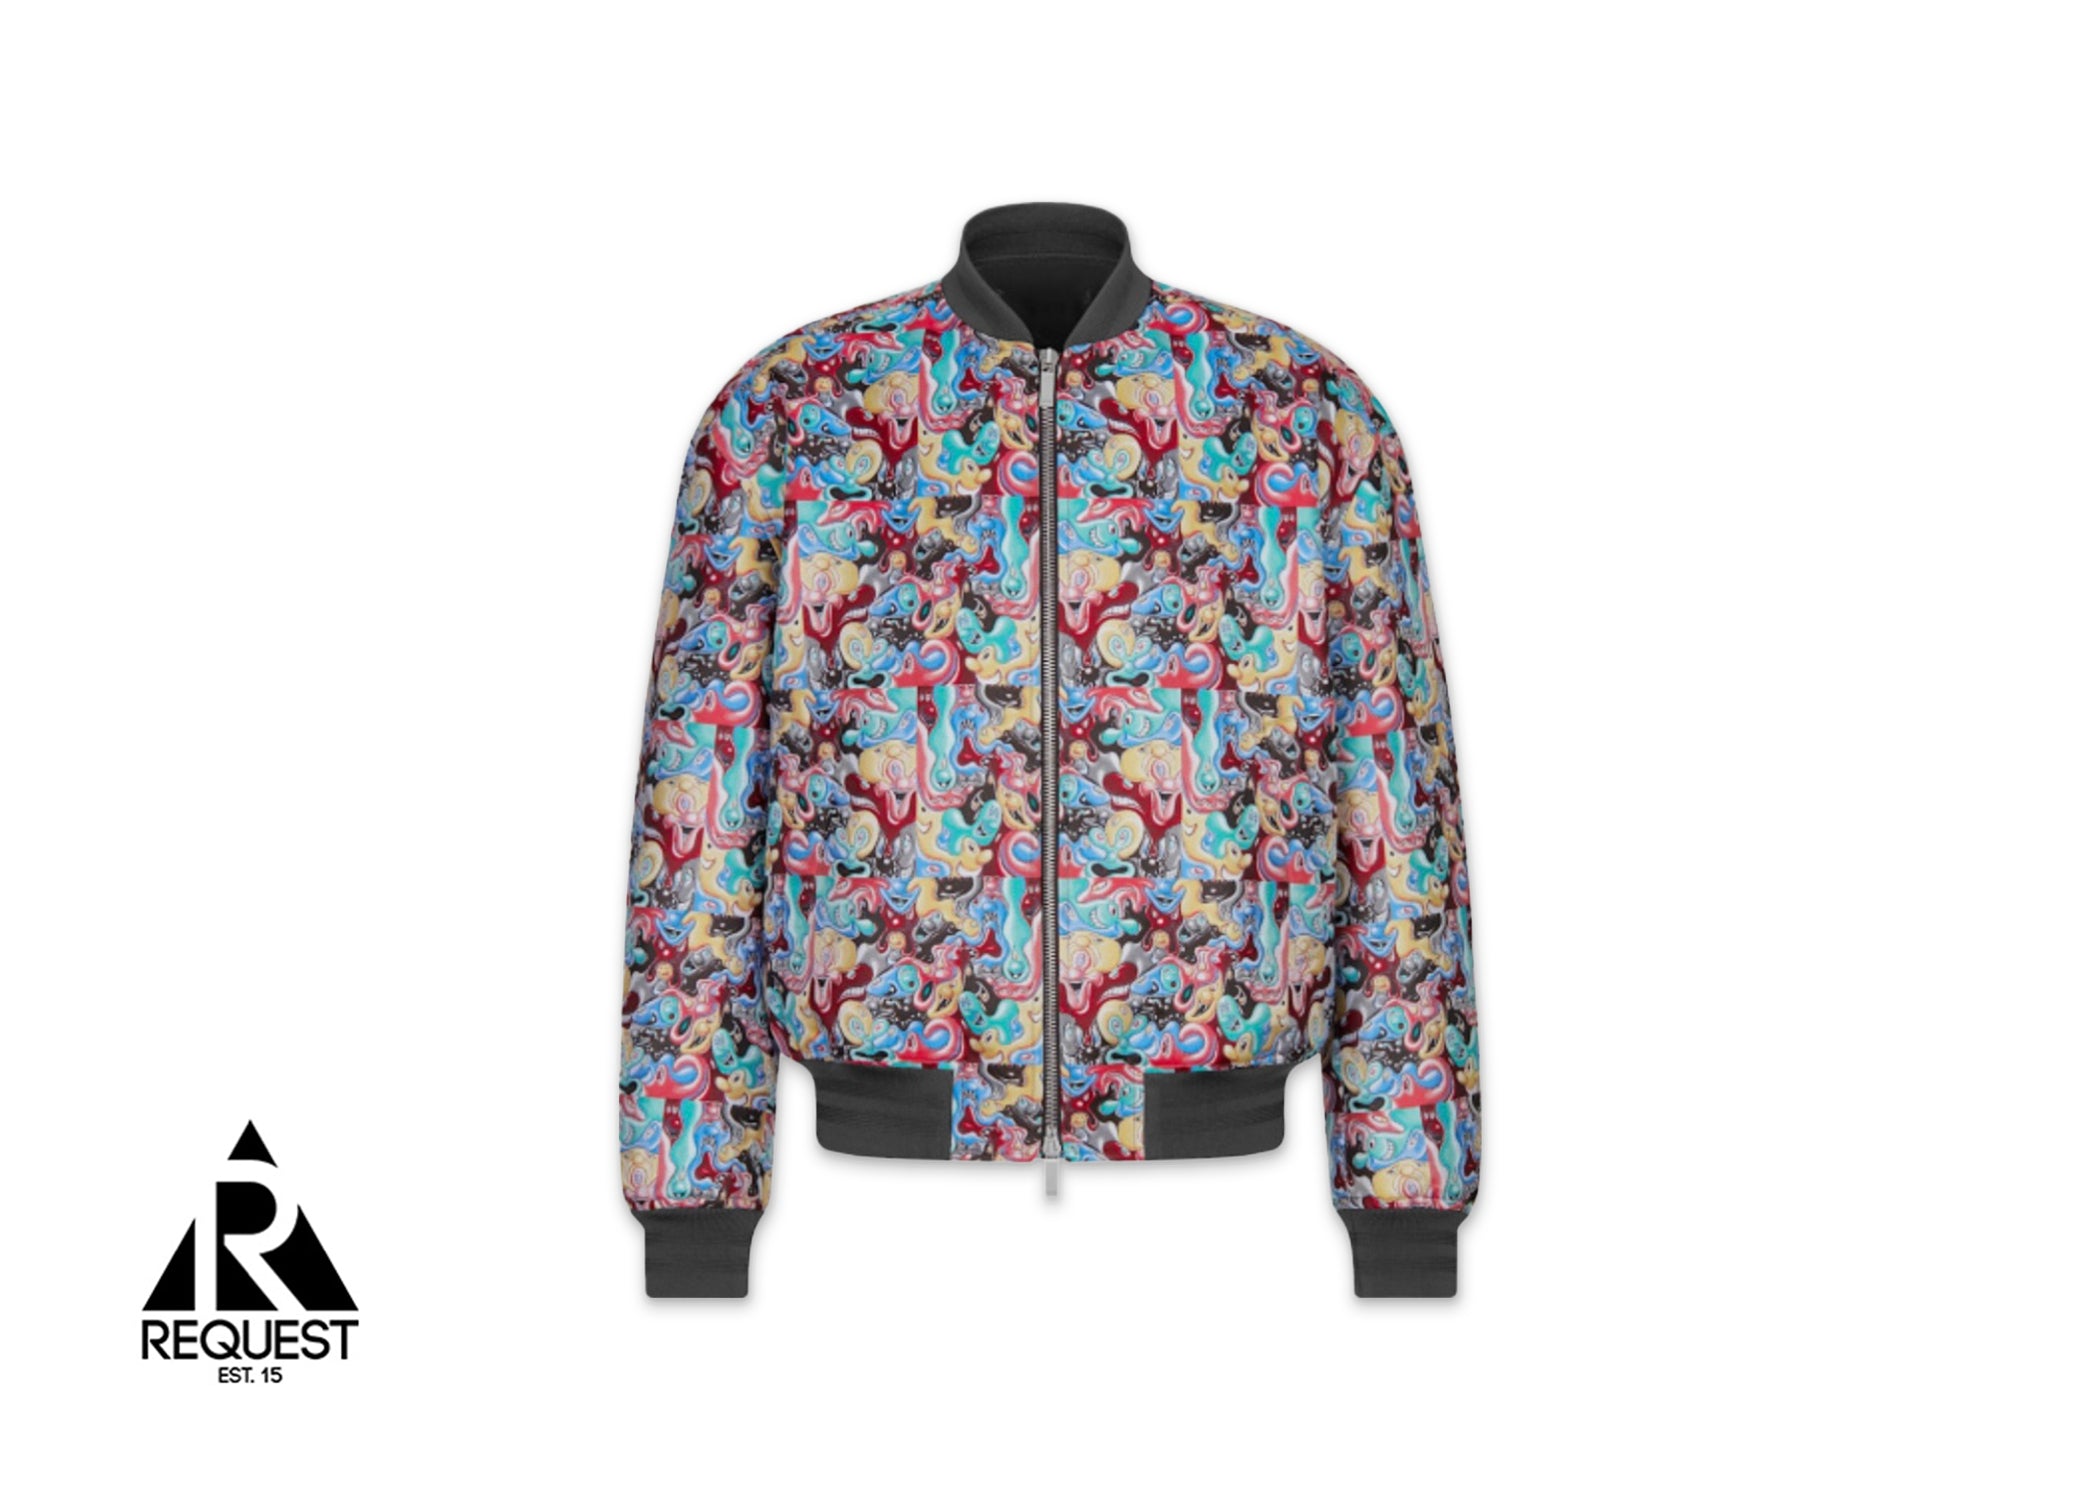 Dior Kenny Scharf Bomber Jacket “Multicolor